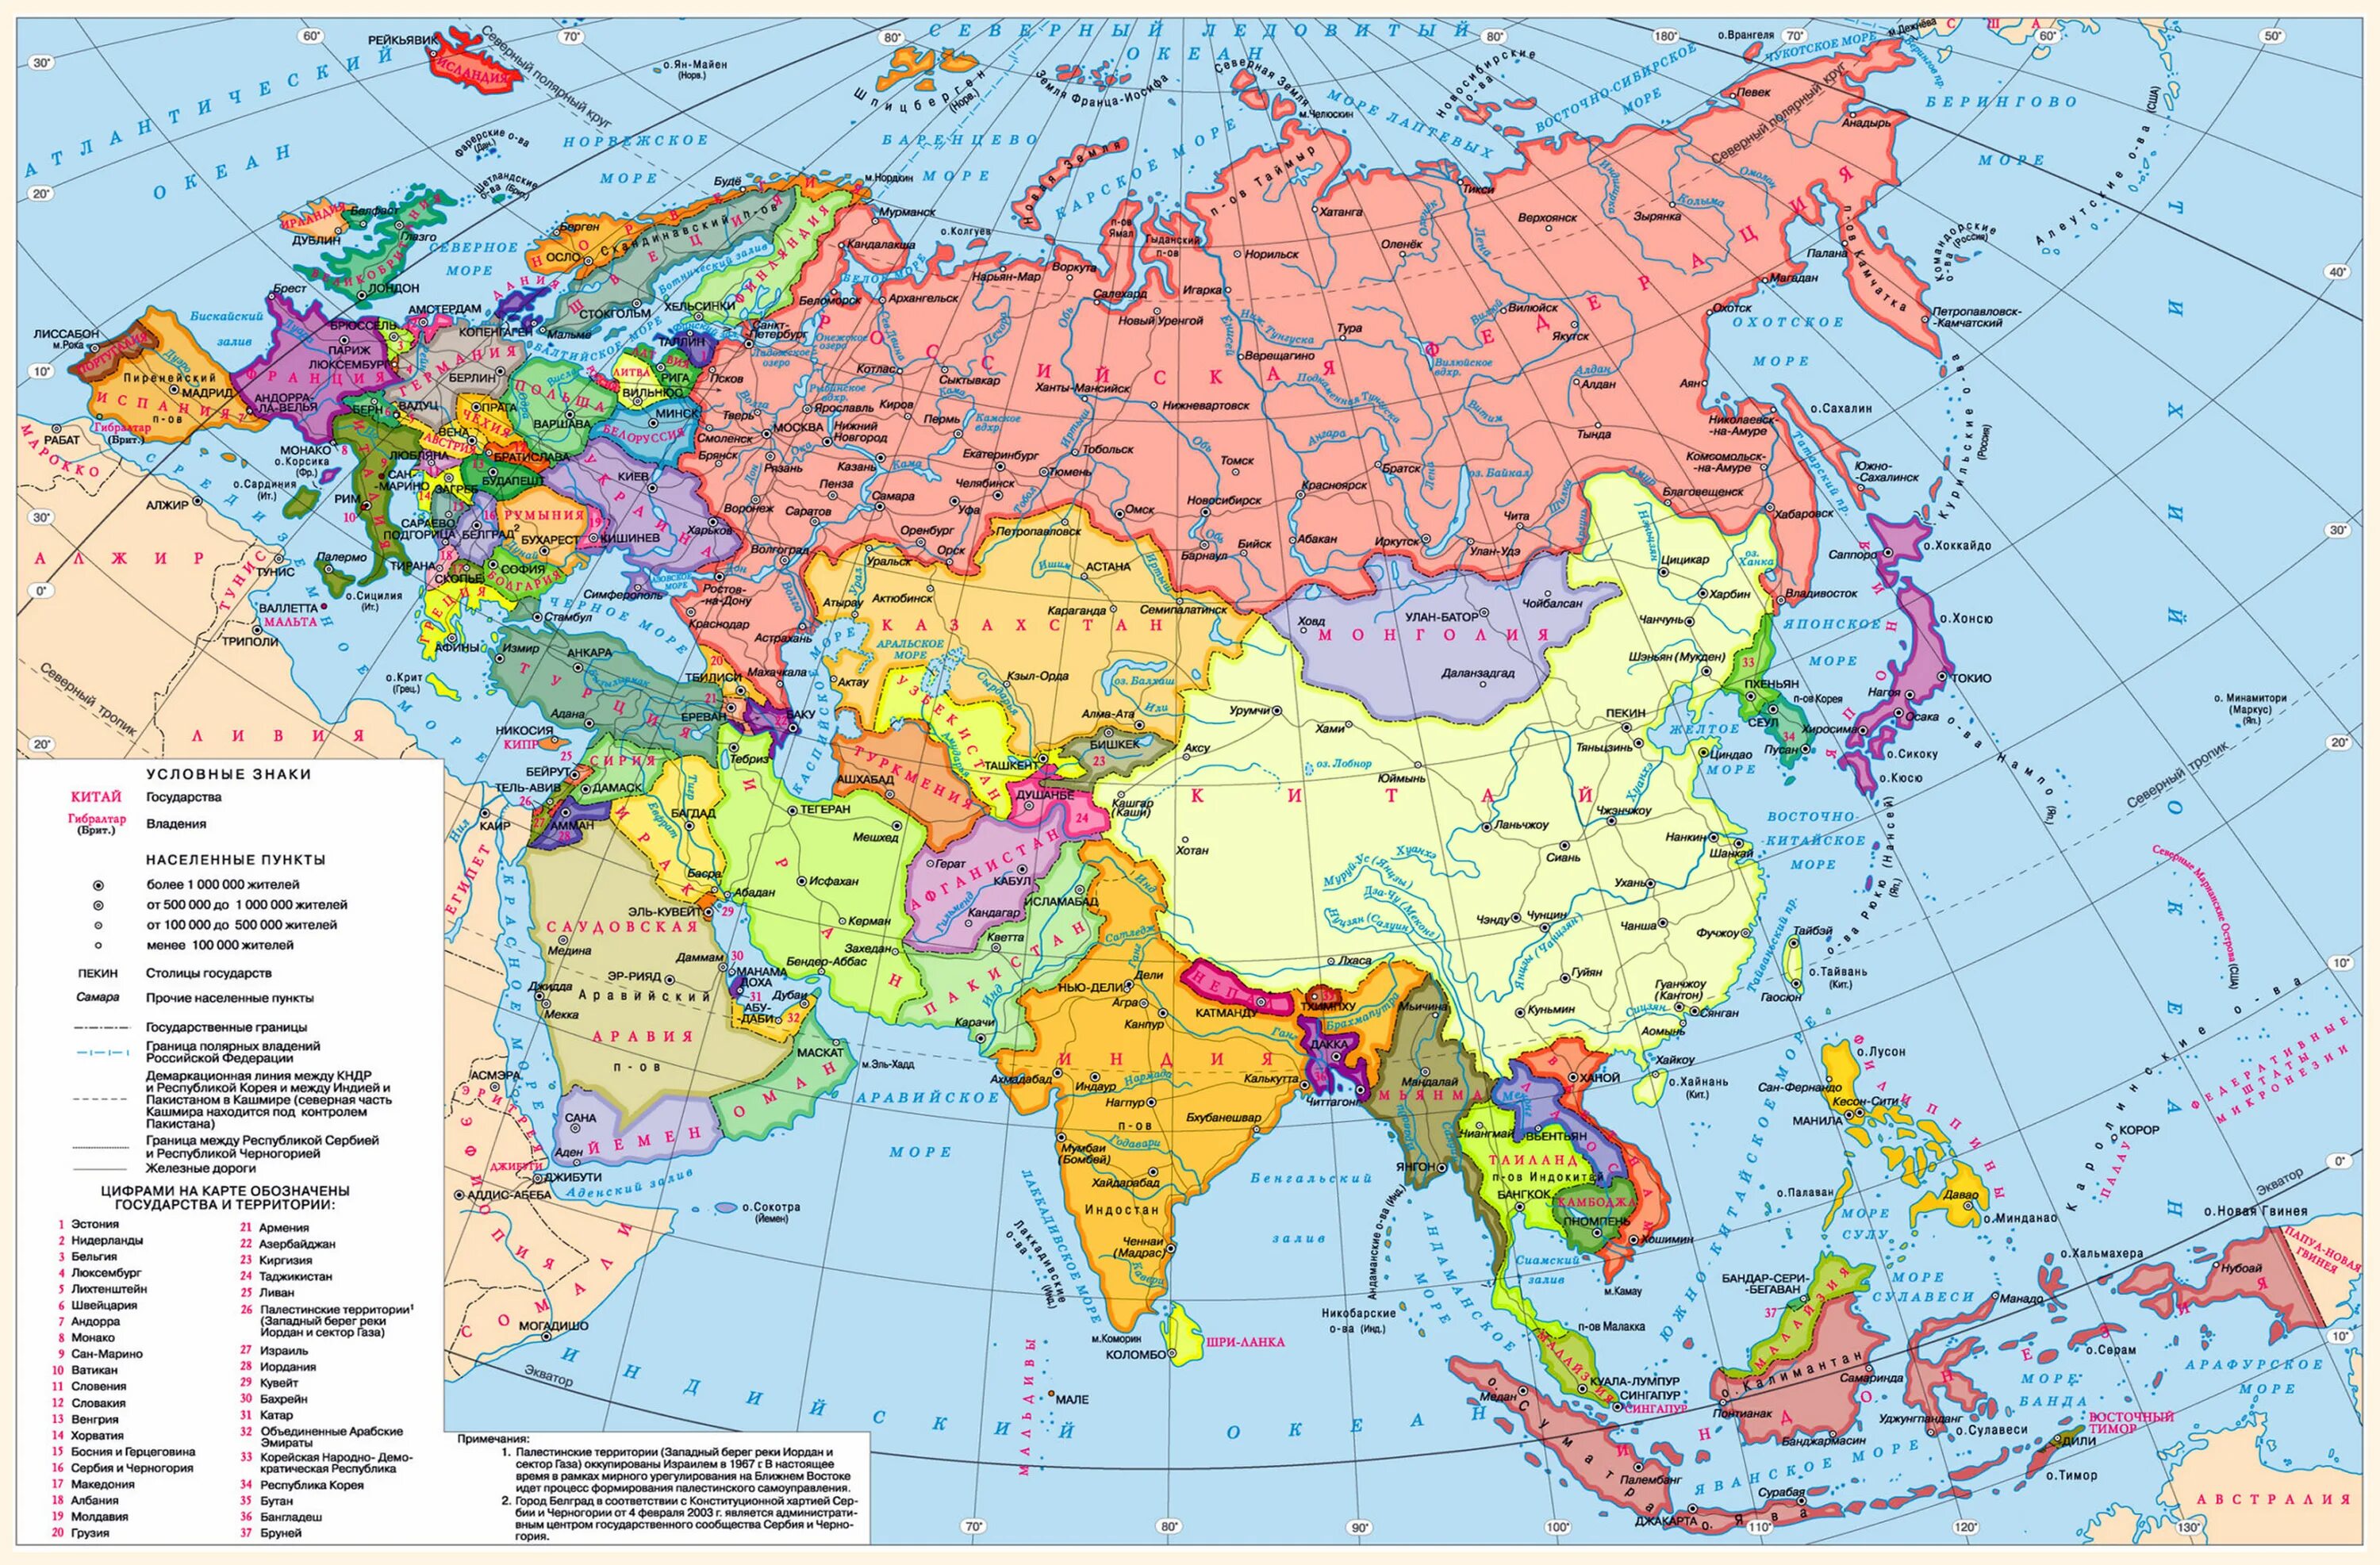 Какие страны евразии являются федеративными государствами. Географическая карта Евразии со странами. Карта зарубежной Азии со странами и столицами. Политическая карта Евразии со странами крупно на русском. Карта Евразии со странами крупно на русском.